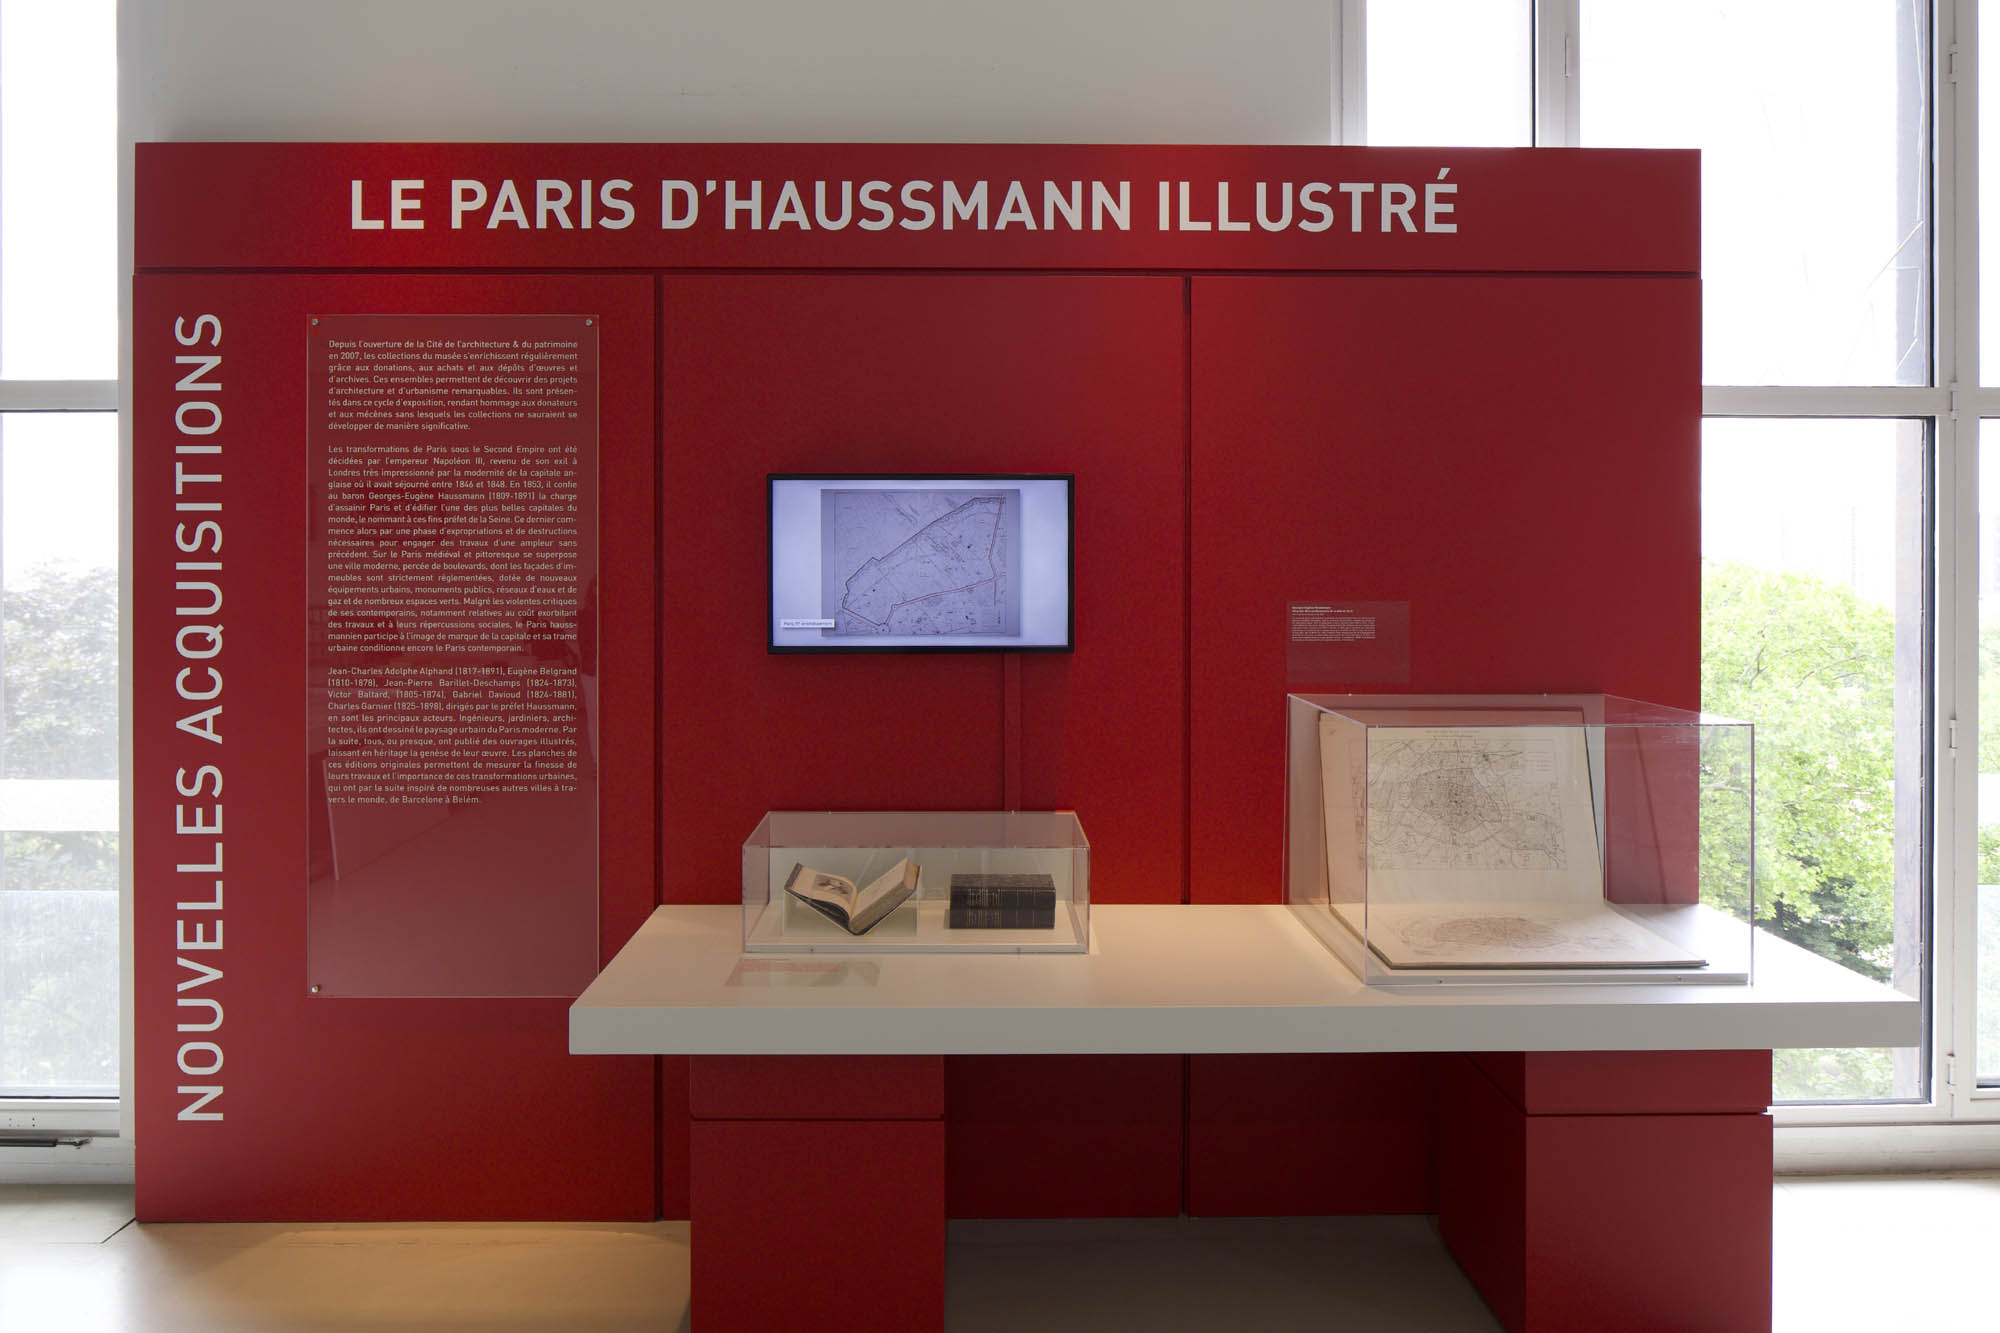 Exposition « Le Paris d'Haussmann illustré » présentée du 10 mars au 20 octobre 2020 © Cité de l'architecture & du patrimoine/Musée des Monuments français/ Photograpies Gaston Bergeret